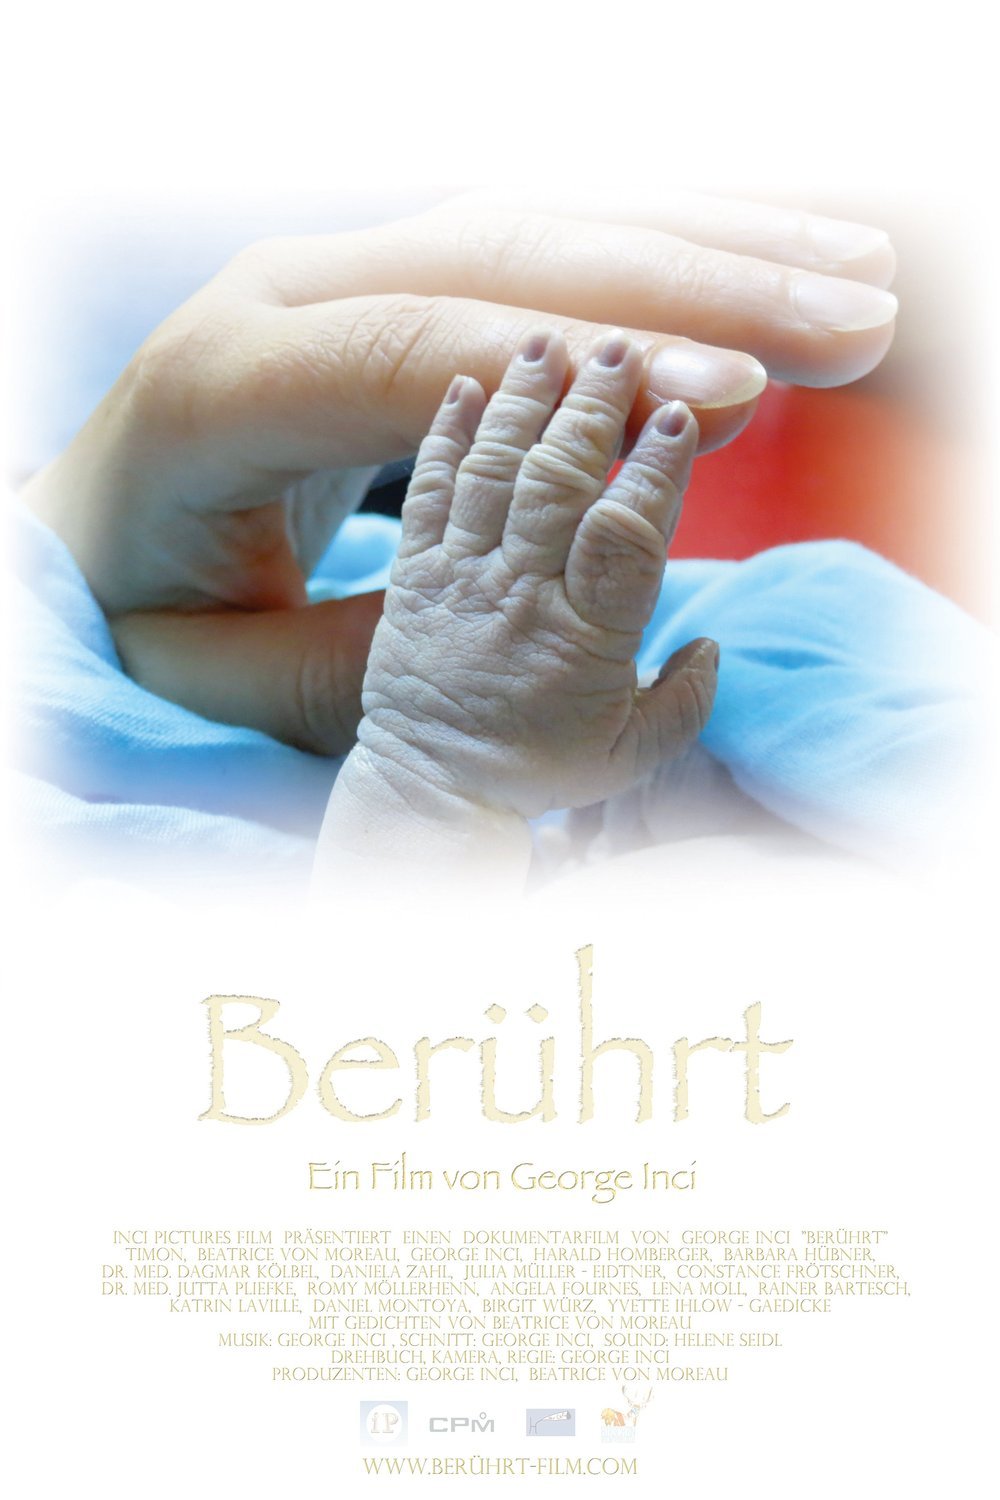 L'affiche originale du film Berührt en allemand